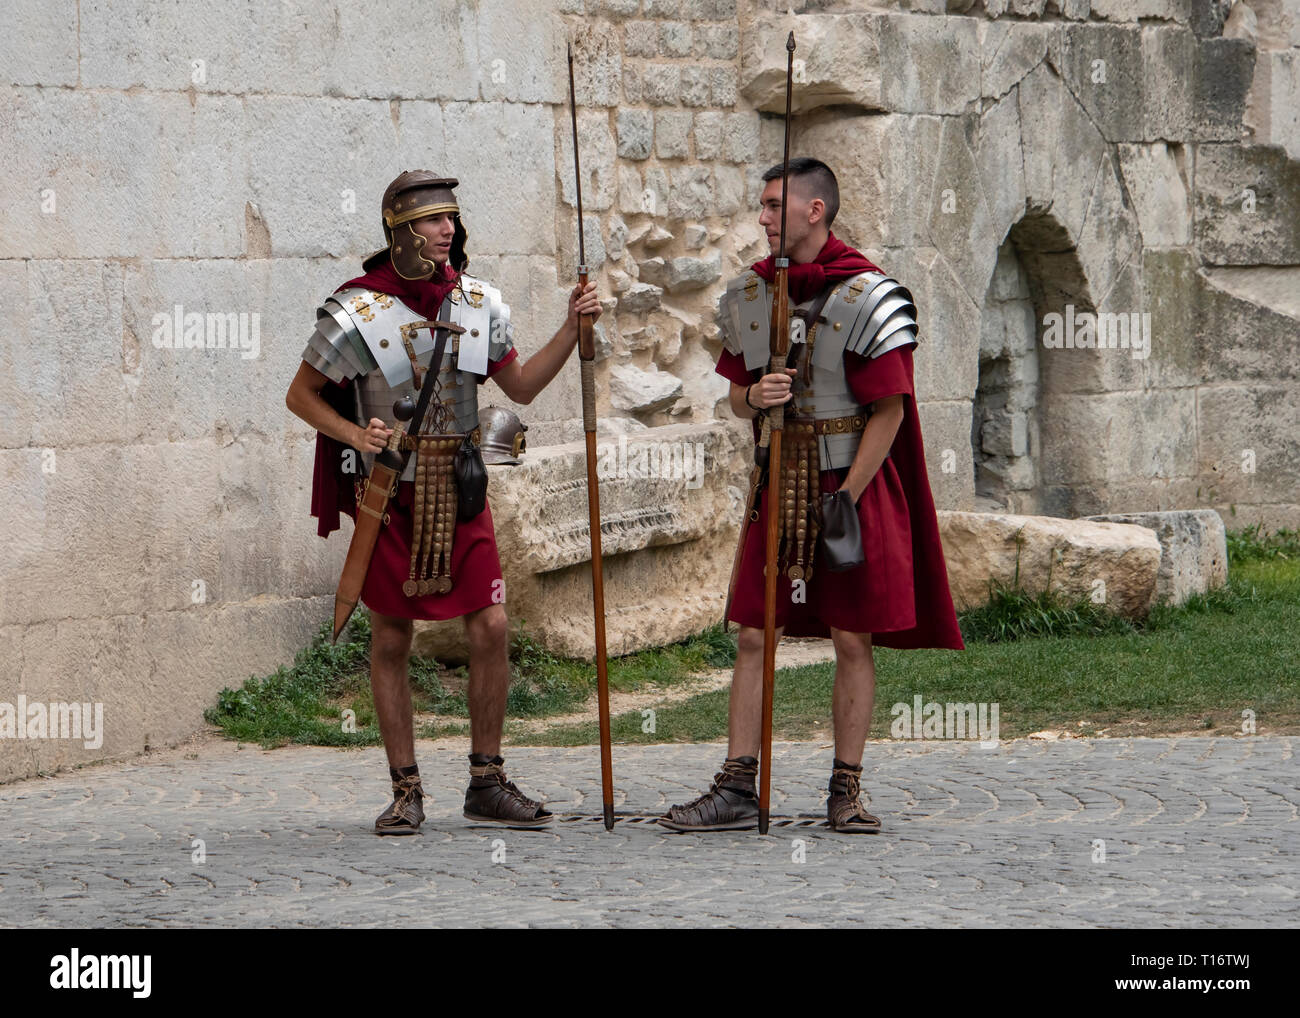 La Croatie, Split - Juin 2018 : de reconstitution historique habillés comme des légionnaires romains, attendre pour poser avec des touristes à la barrière pour le palais de Dioclétien Banque D'Images